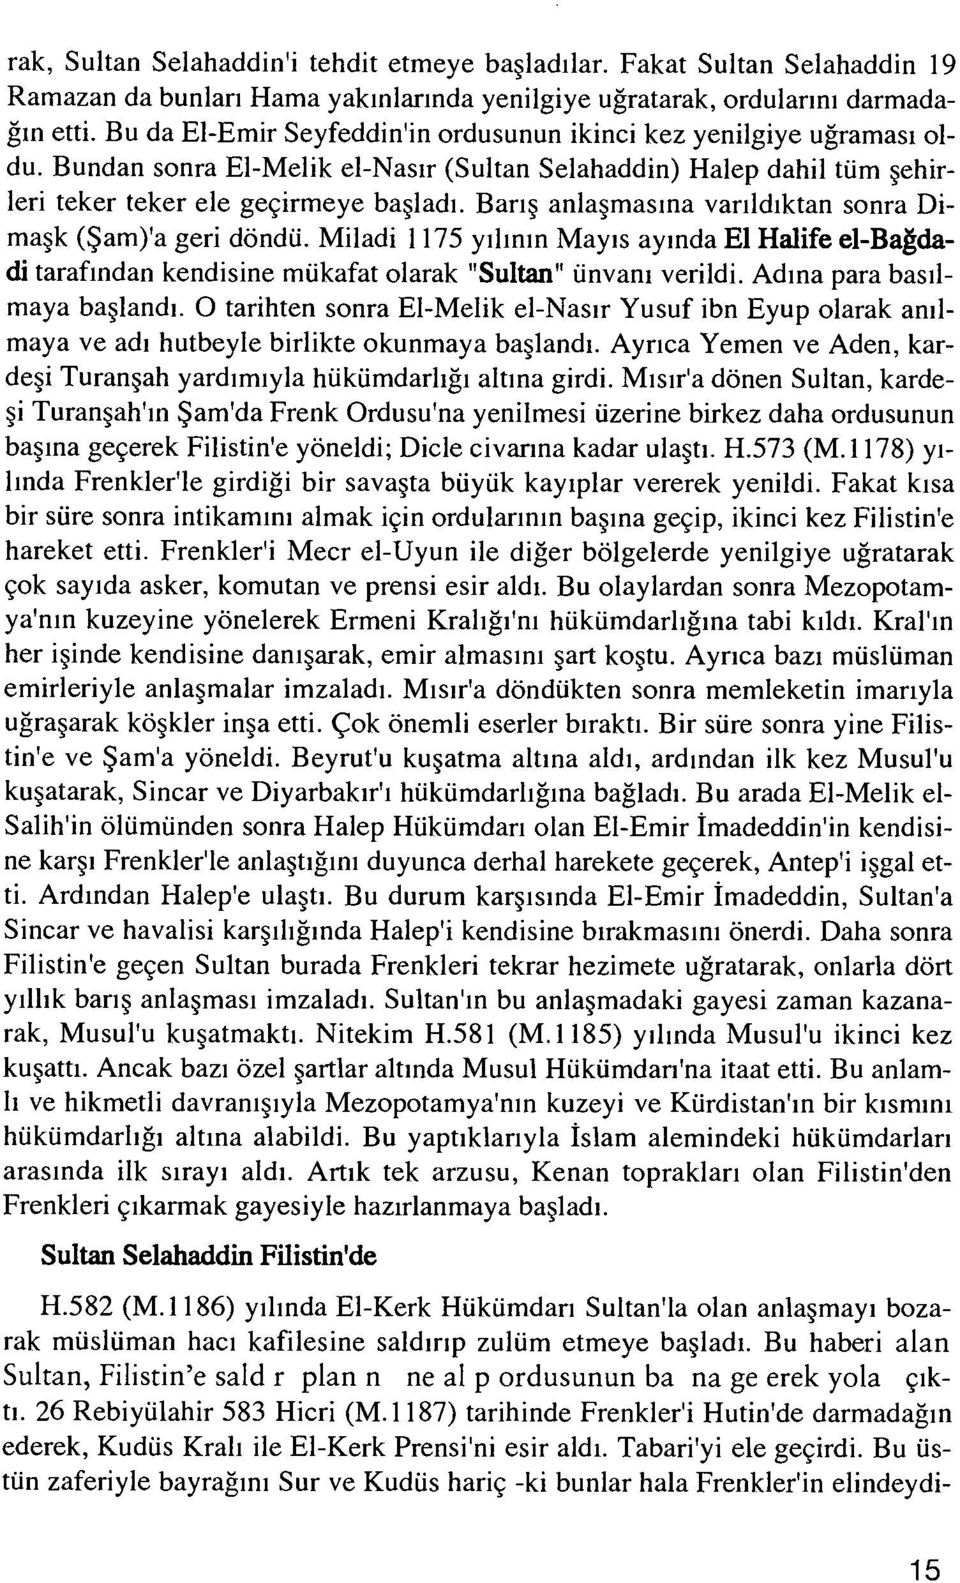 Barış anlaşmasına varıldıktan sonra Di maşk (Şam)'a geri döndü. Miladi 1 175 yılının Mayıs ayında El Halife el-bağdadi tarafından kendisine mükafat olarak "Sultan" unvanı verildi.